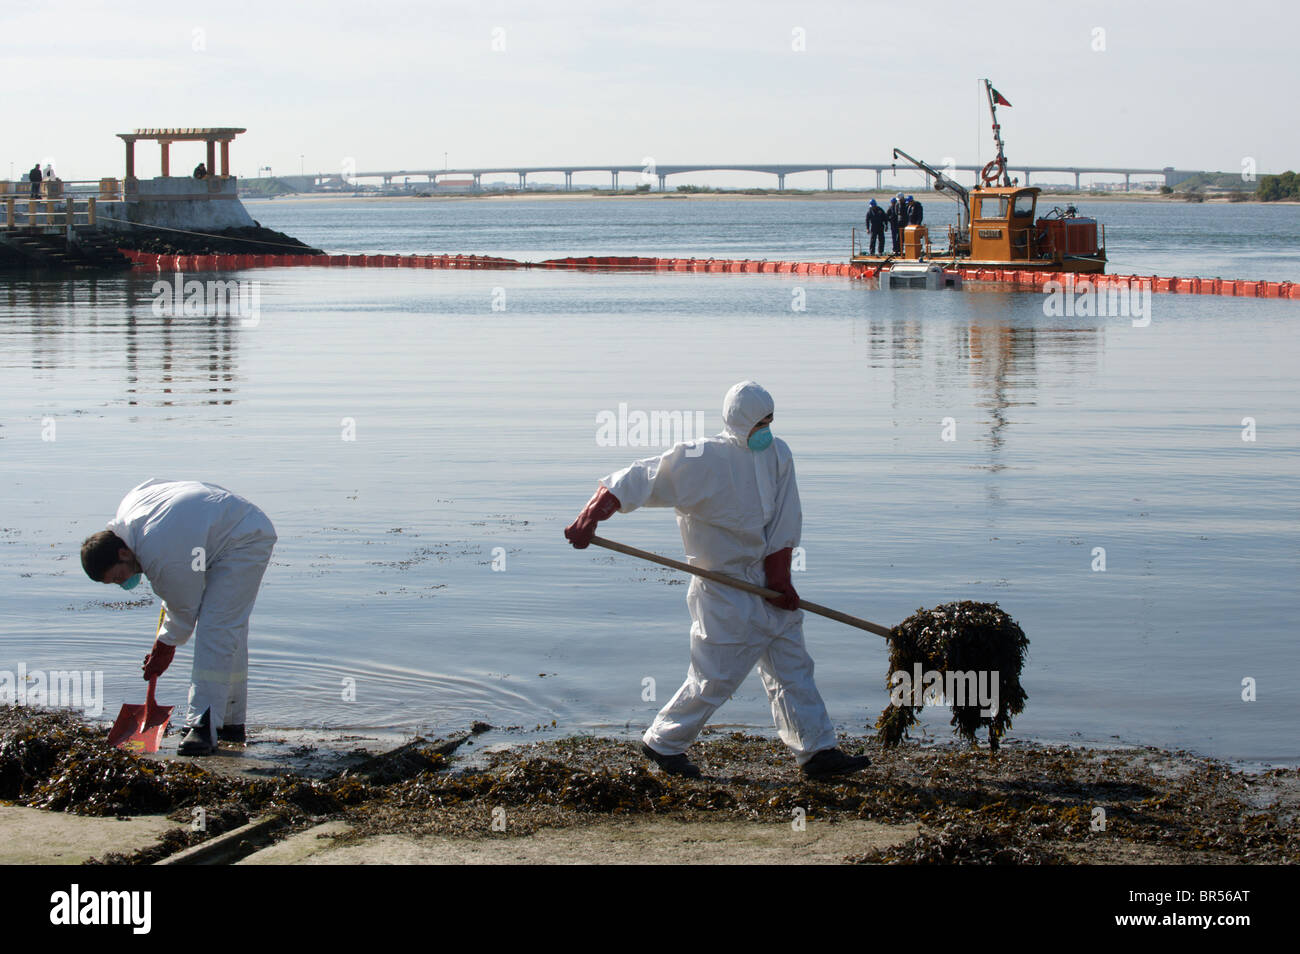 Los hombres en el cuerpo completo de ropa protectora y máscaras respiratorias limpie la base mientras un barco sella la bahía con boyas Foto de stock